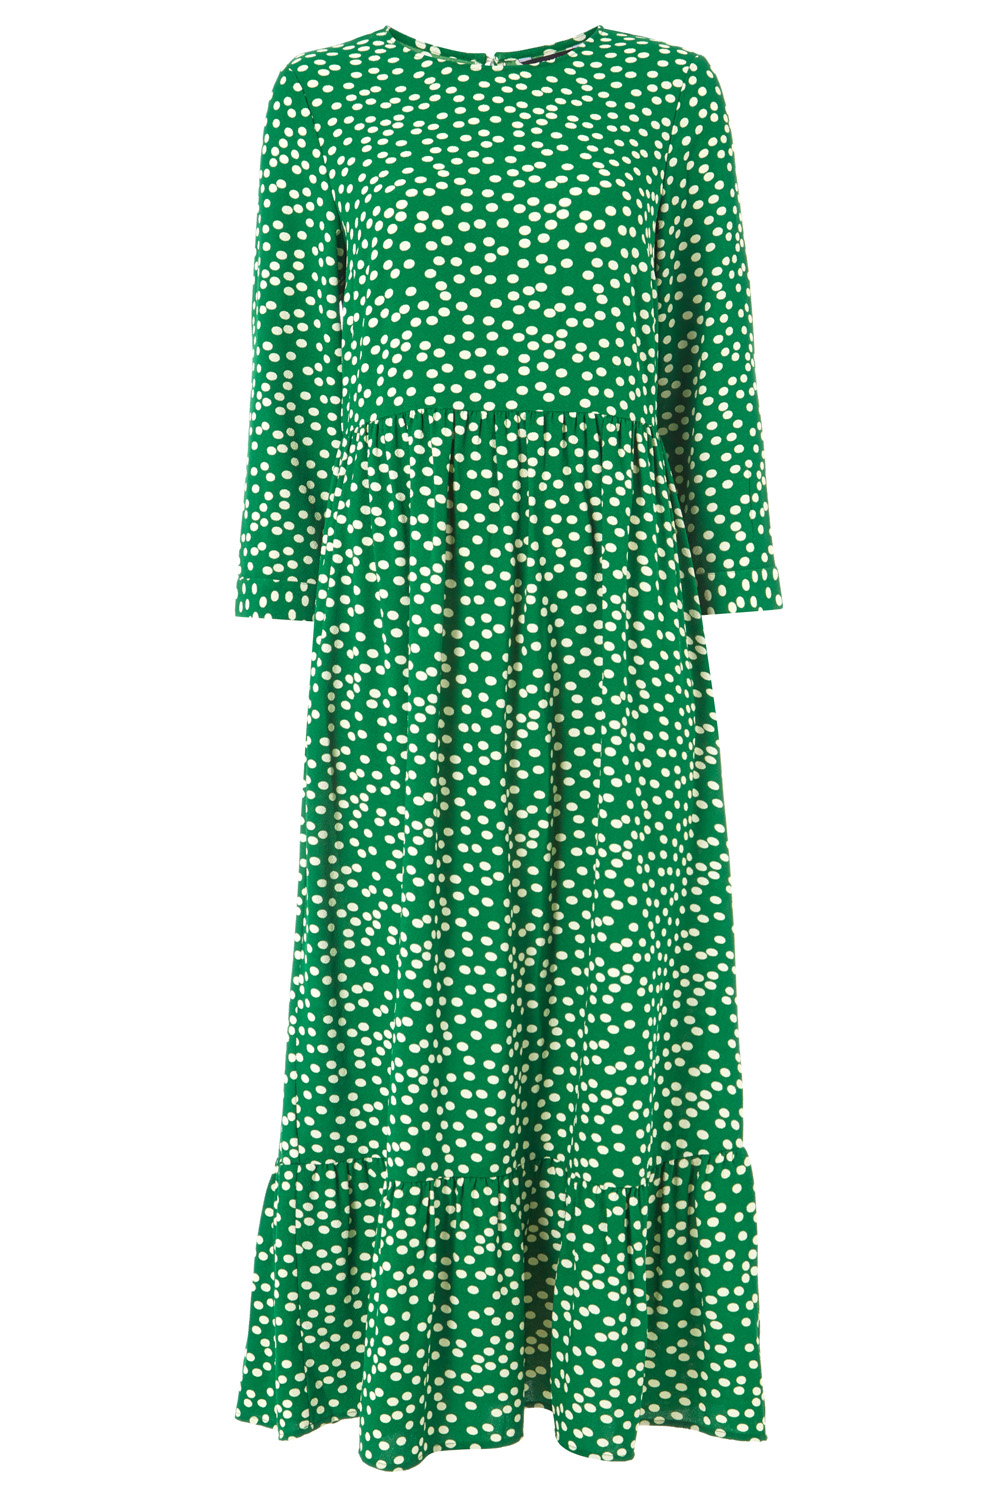 Polka Dot Print Tiered Maxi Dress in Green - Roman Originals UK